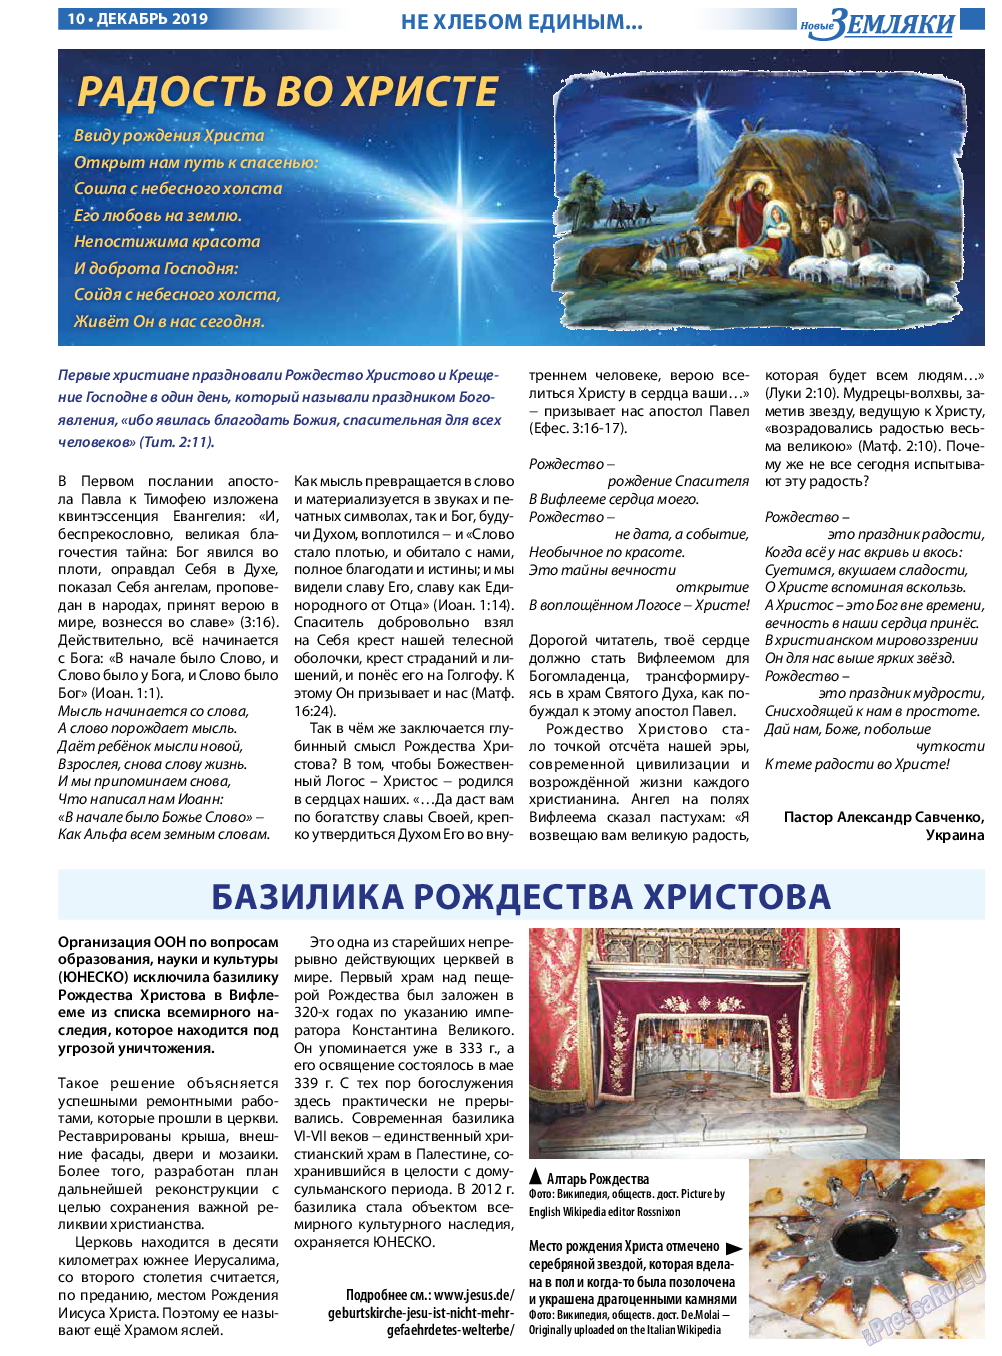 Новые Земляки (газета). 2019 год, номер 12, стр. 10